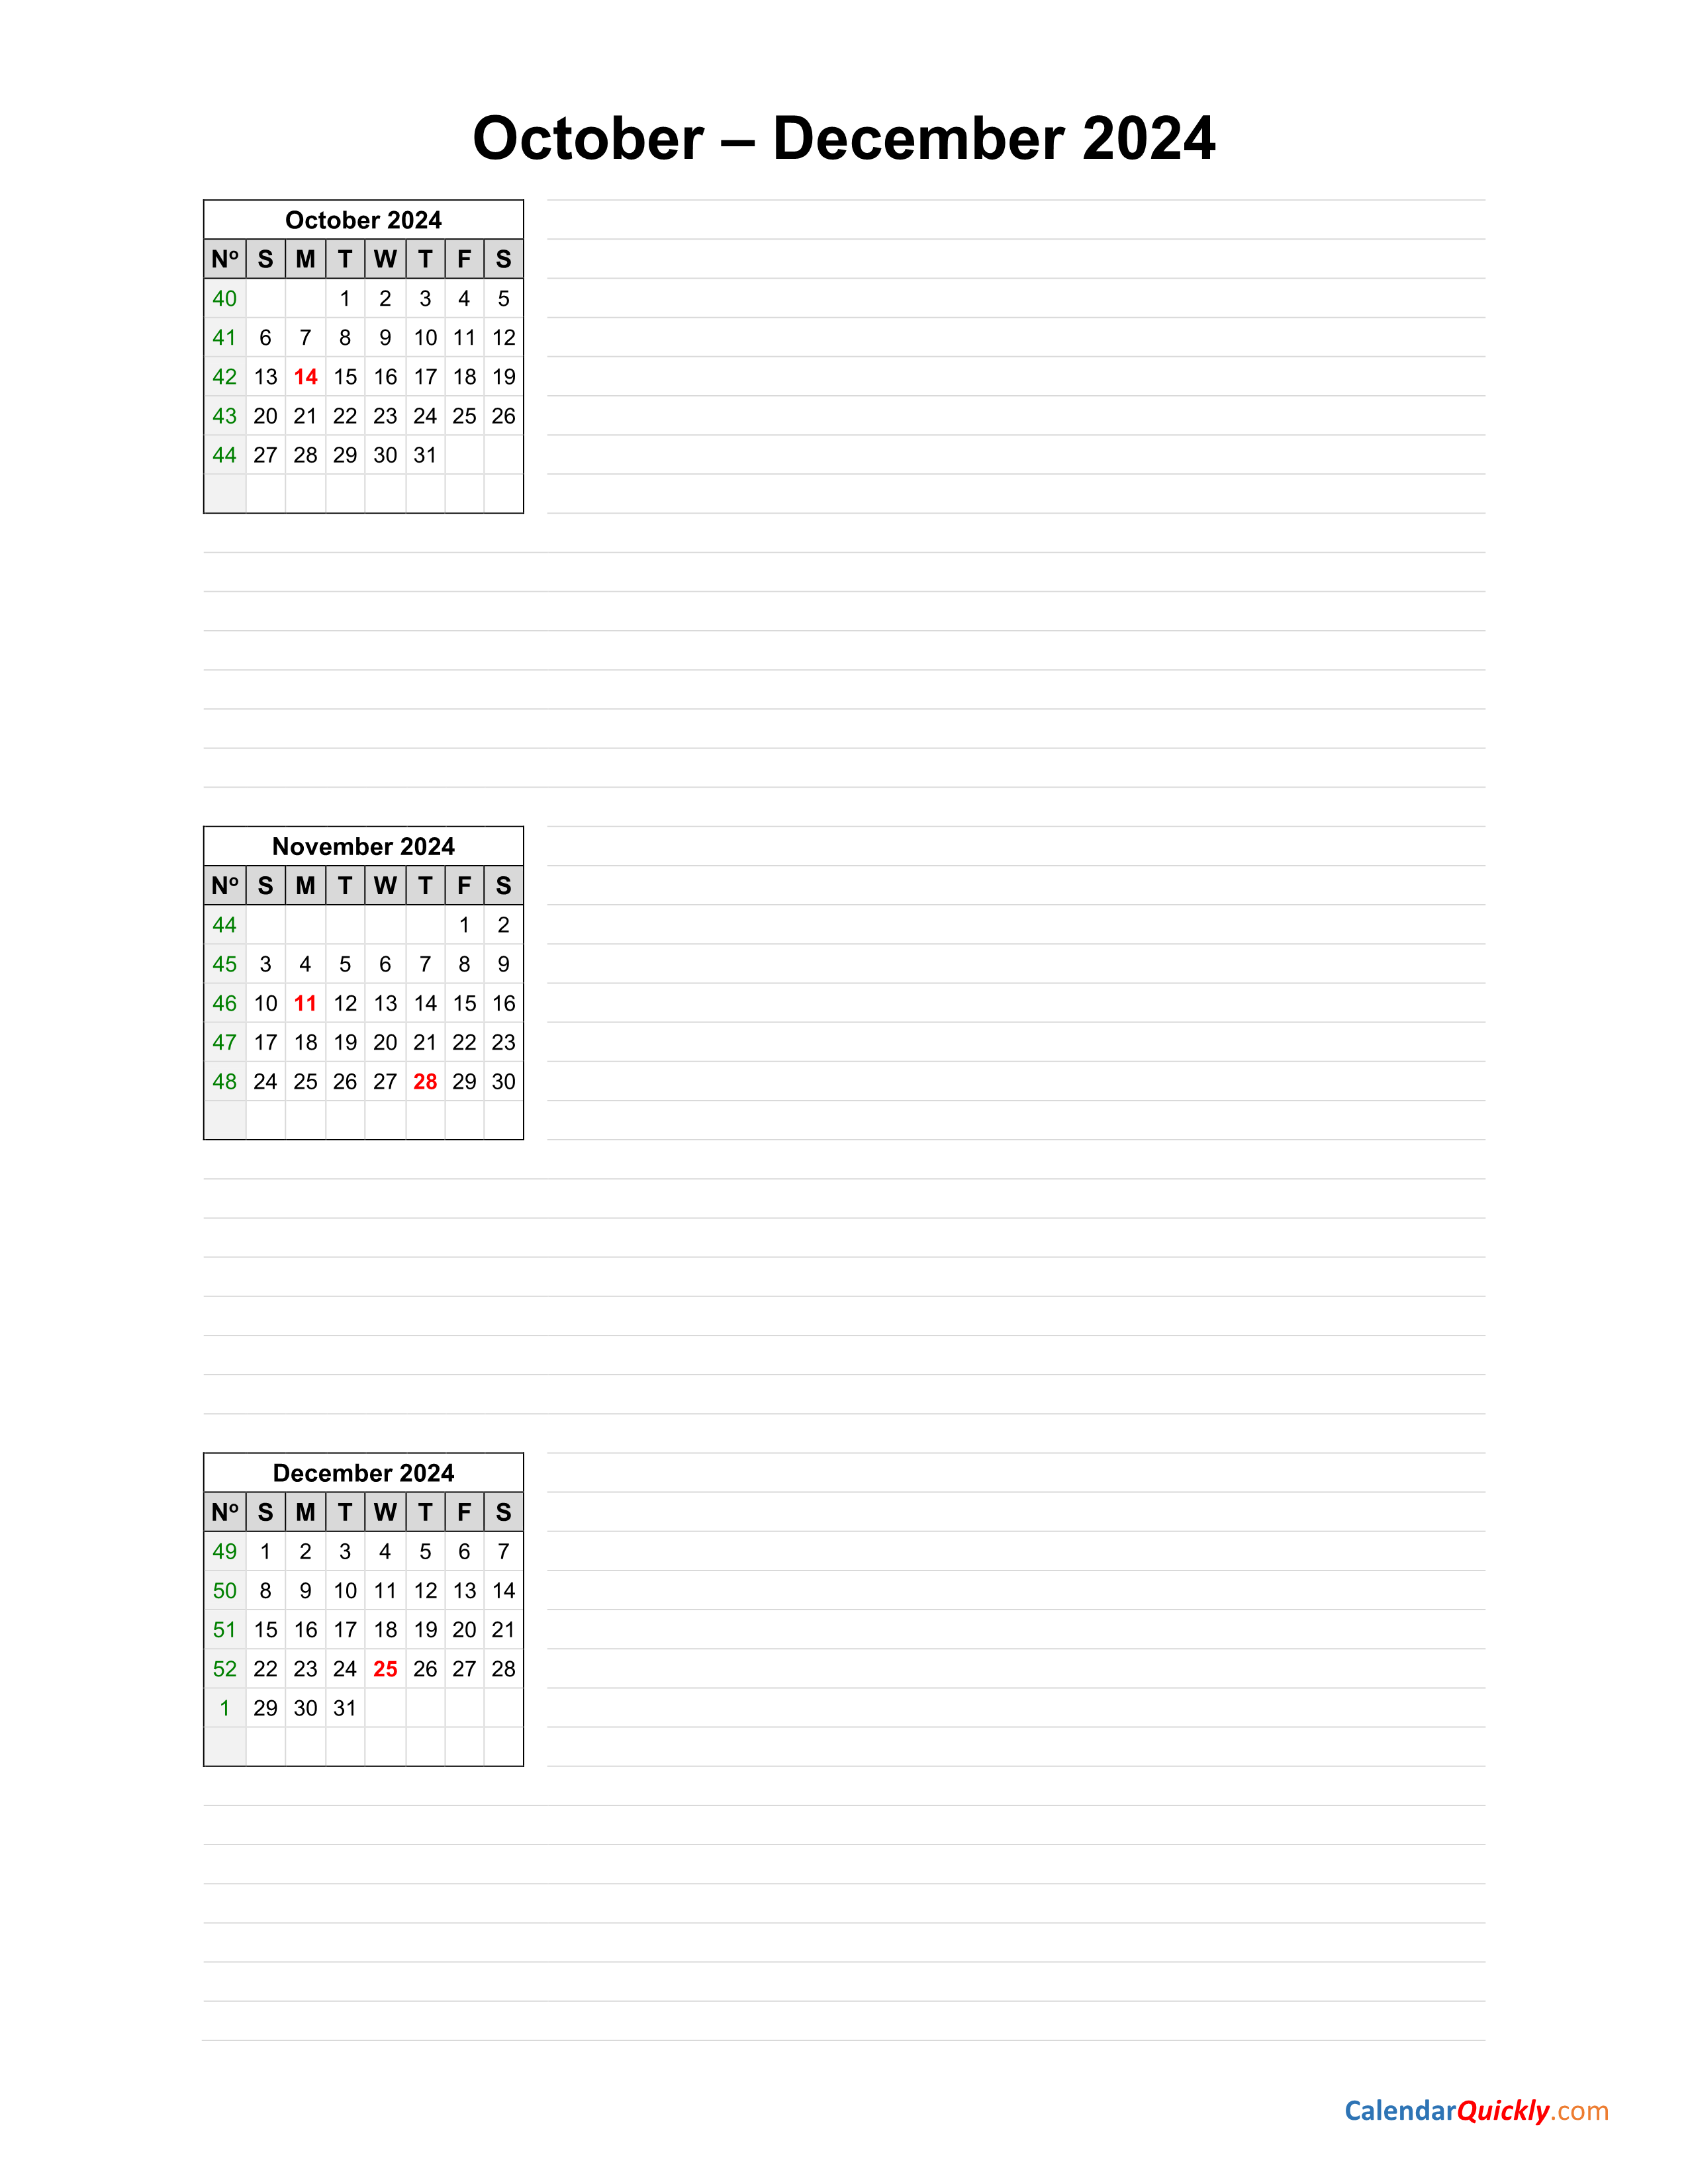 October to December 2024 Calendar Calendar Quickly